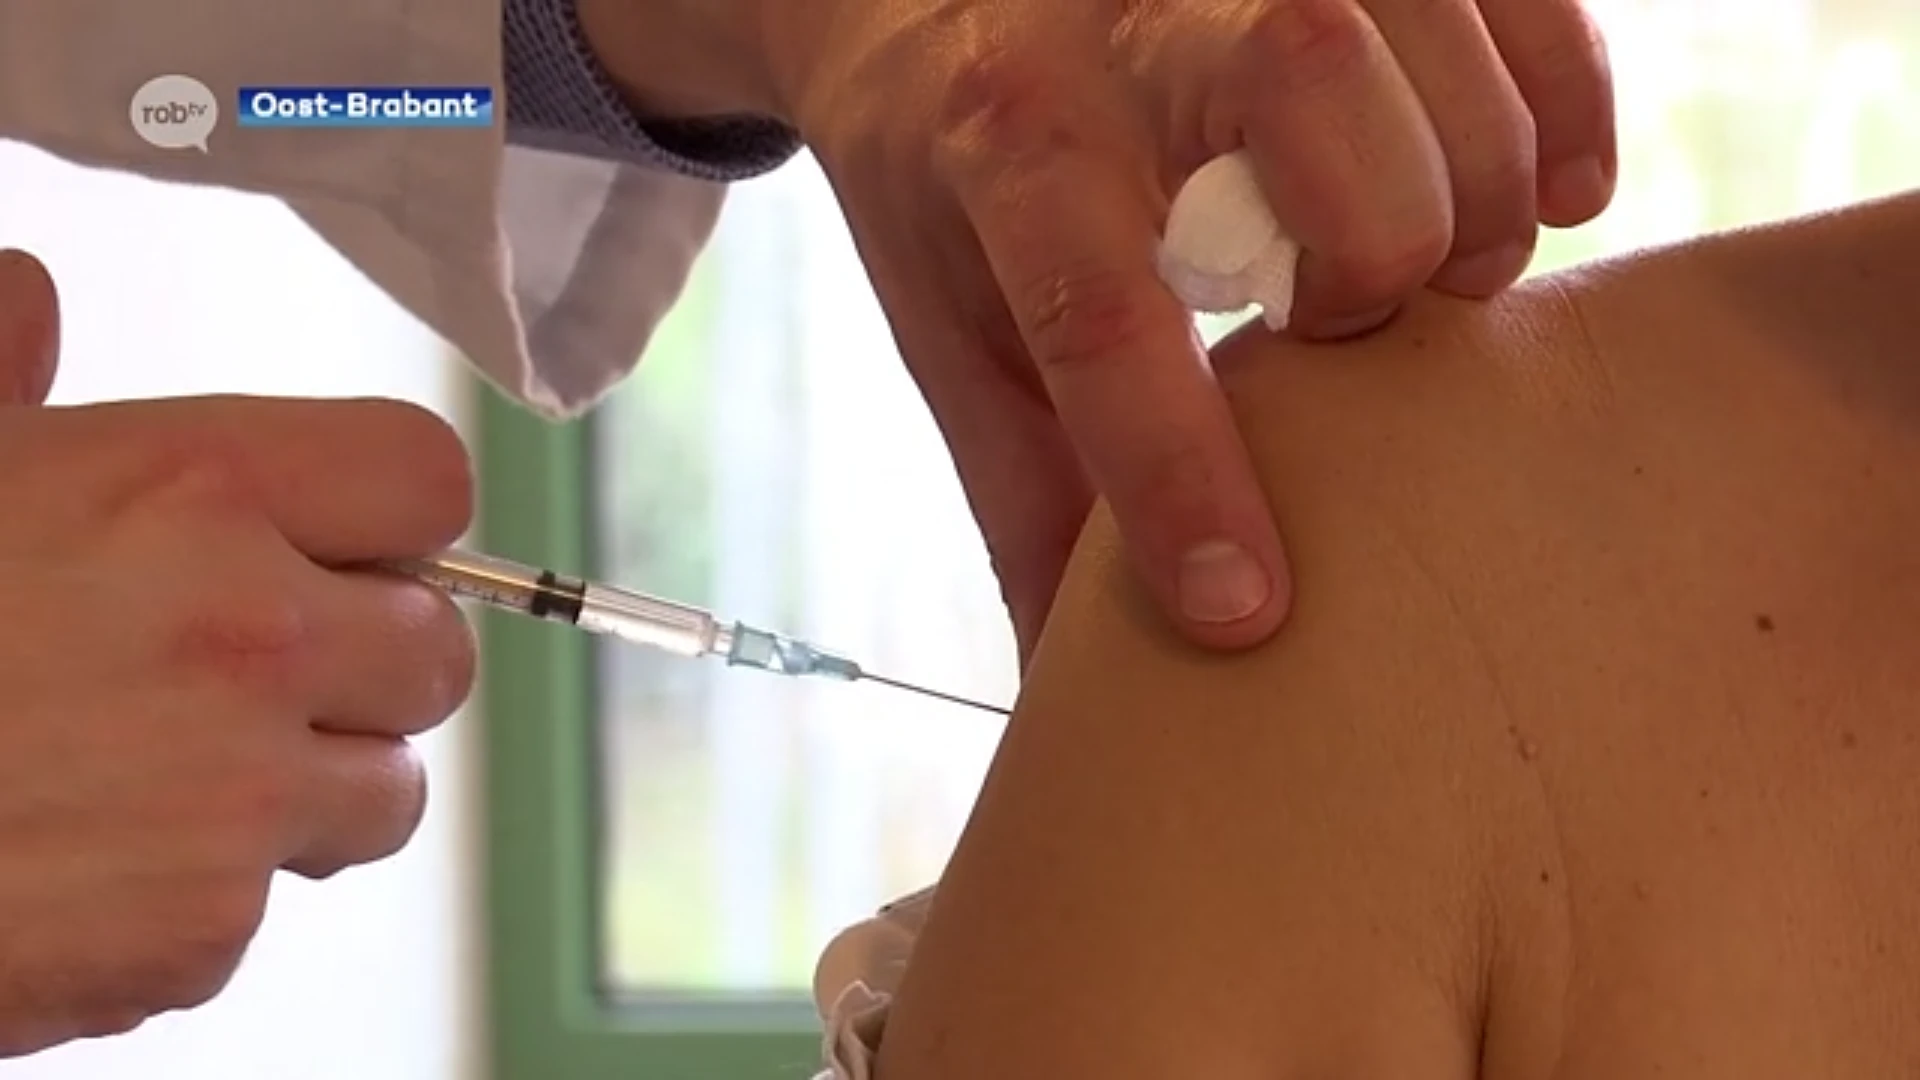 Oost-Brabant krijgt zeker 10 vaccinatiecentra om klaar te zijn met vaccineren tegen einde van de zomer